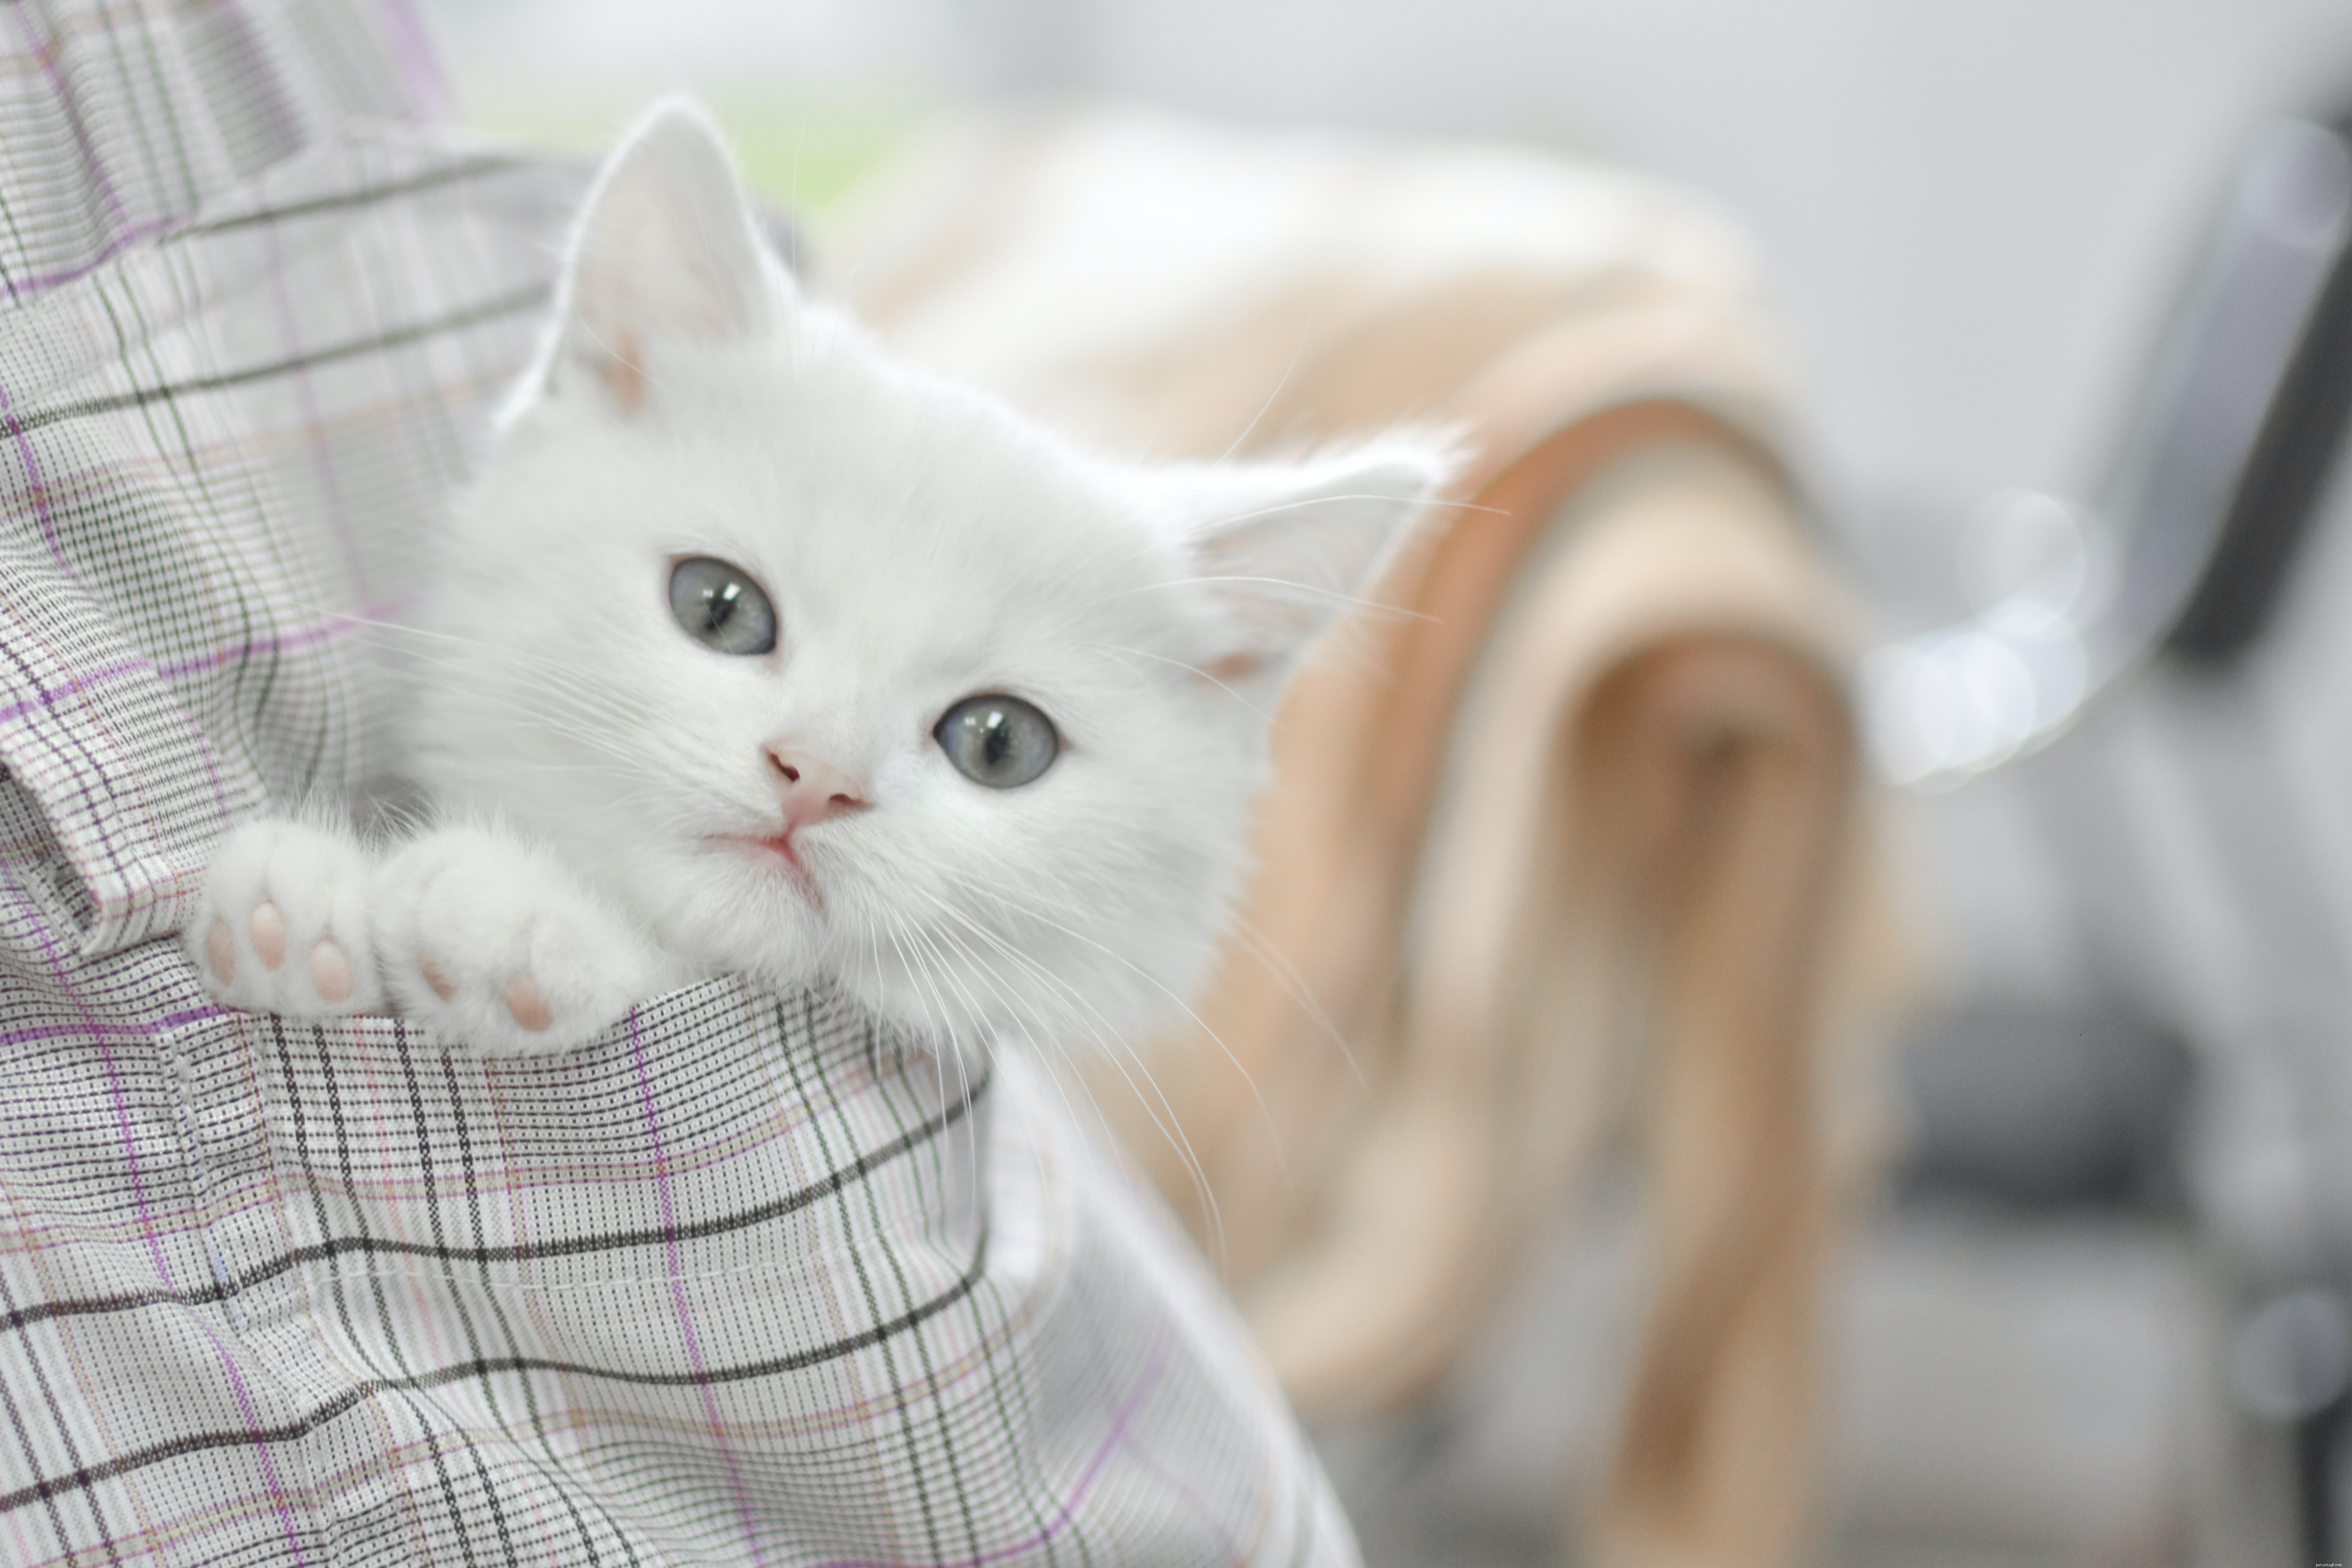 Qu est-ce qui est le mieux – Adopter un chat ou acheter un chaton ?